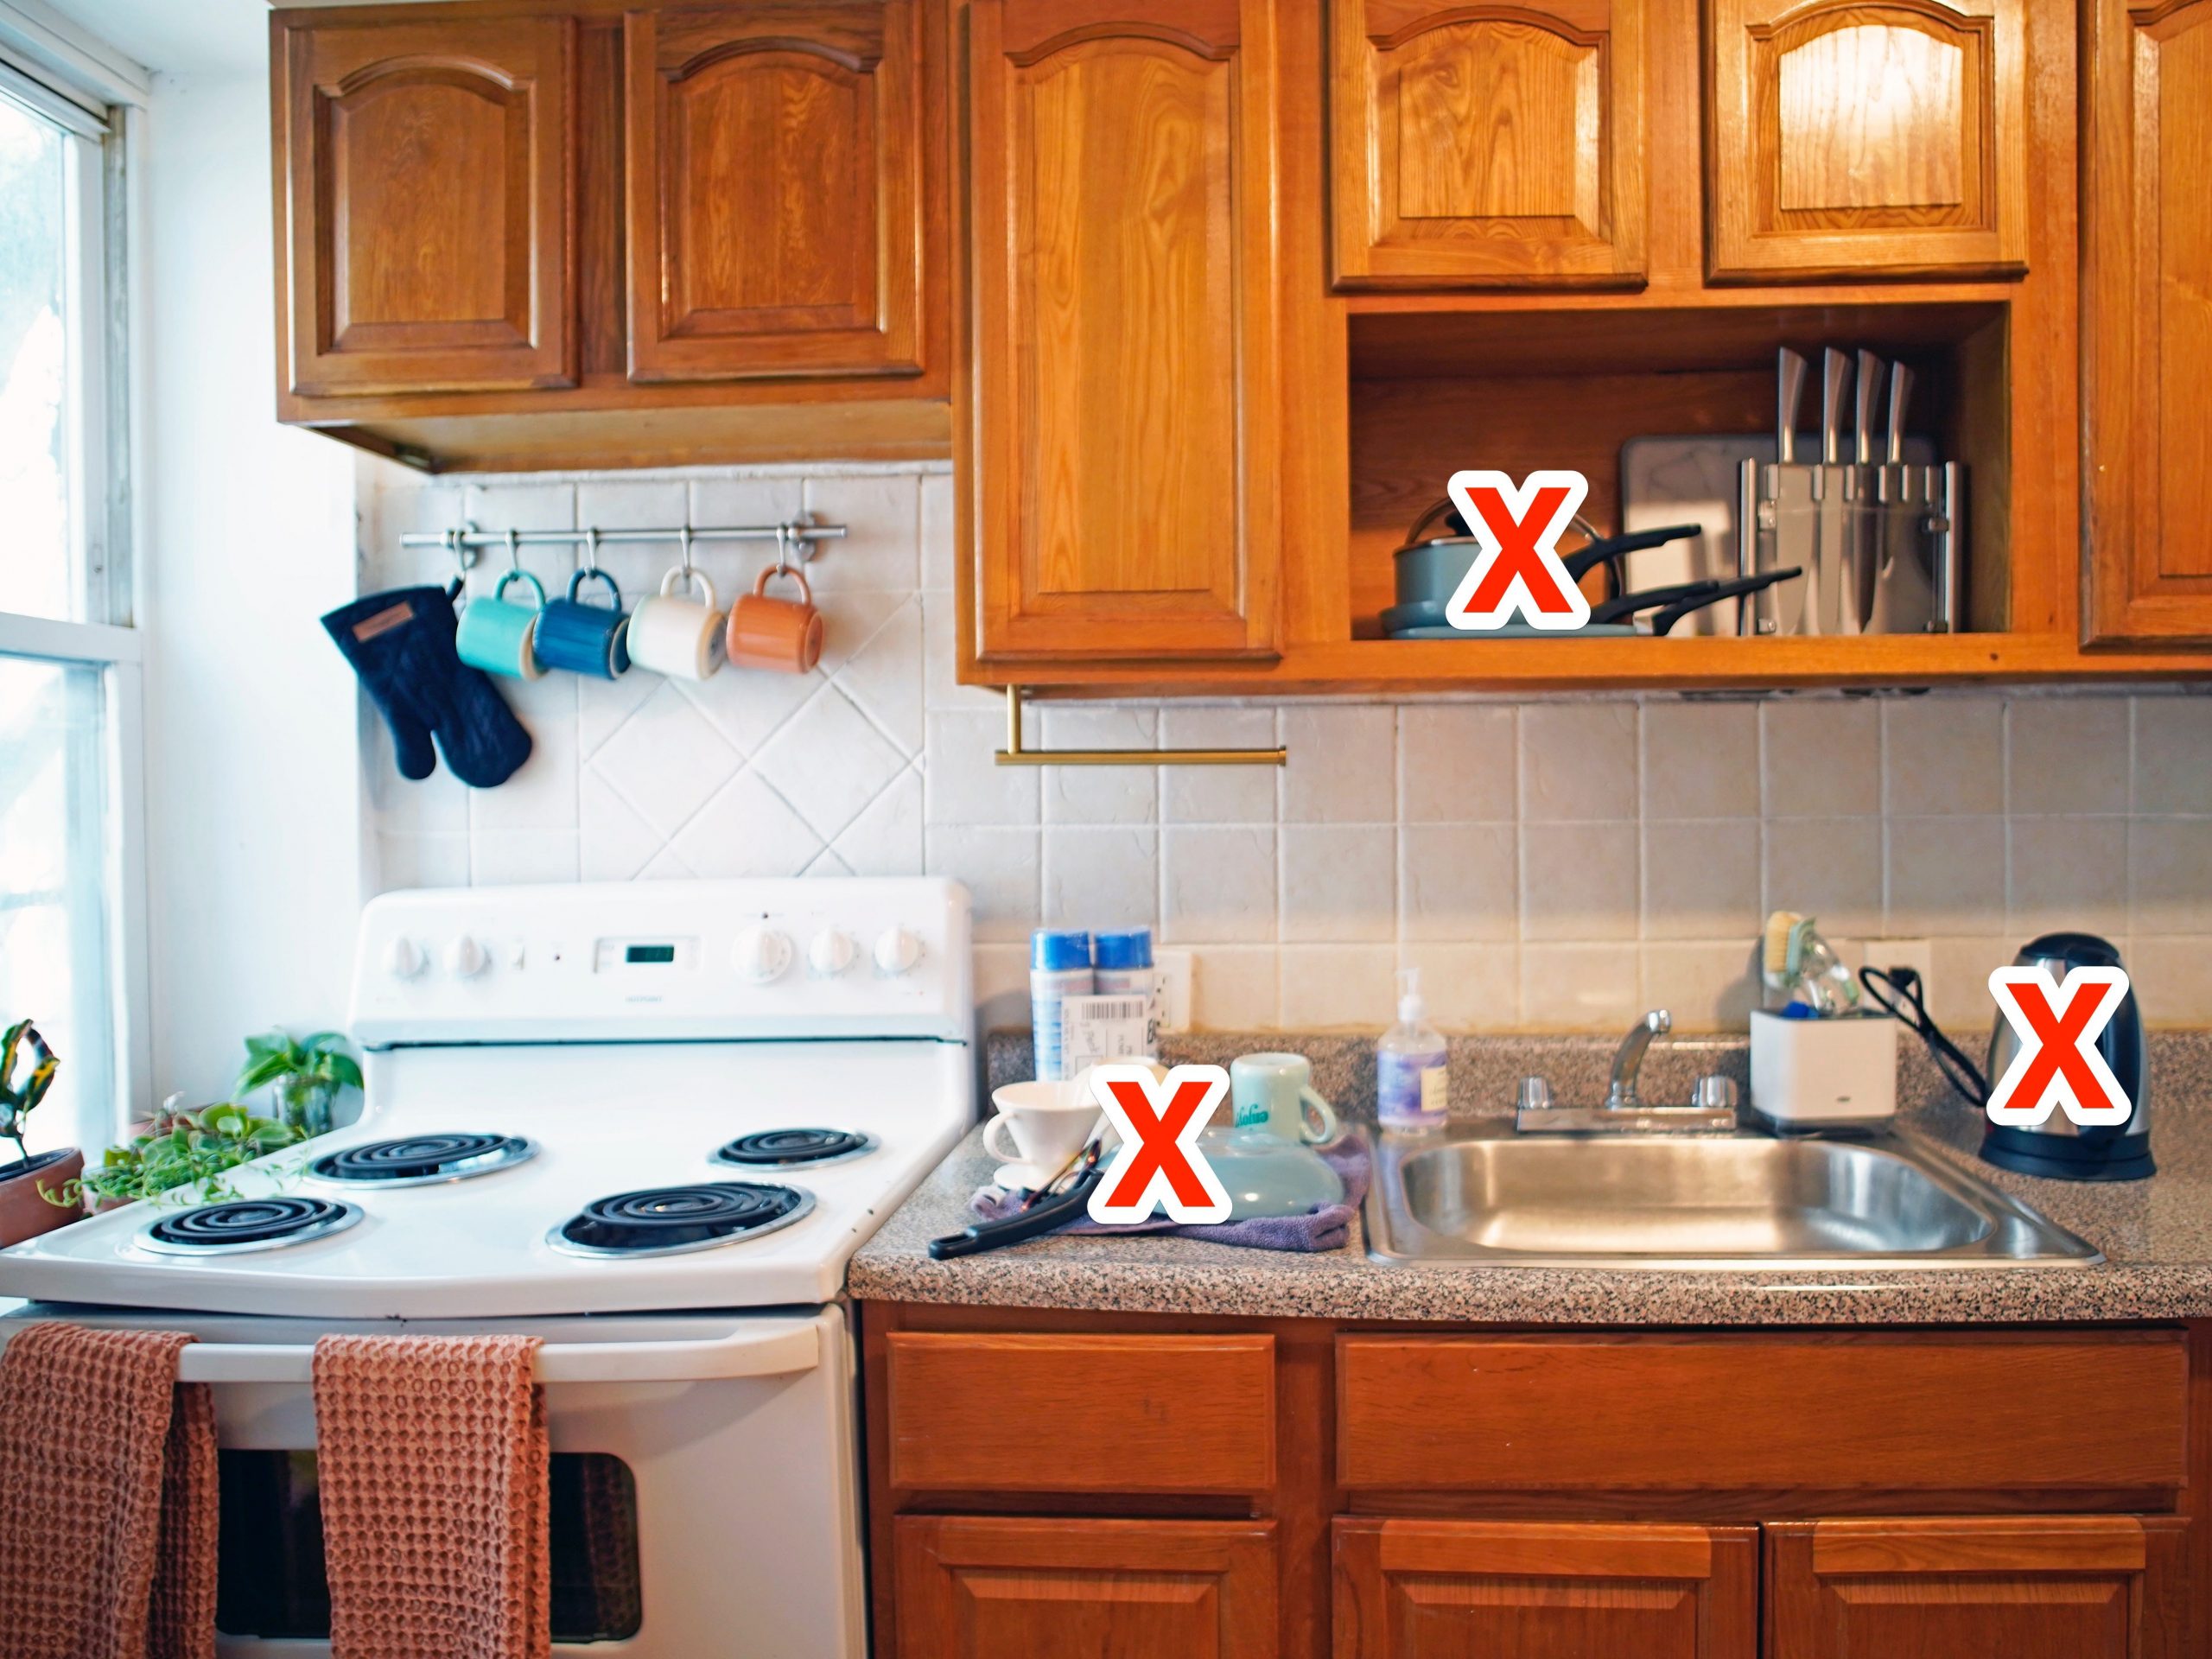 biggest mistakes kitchen designers make